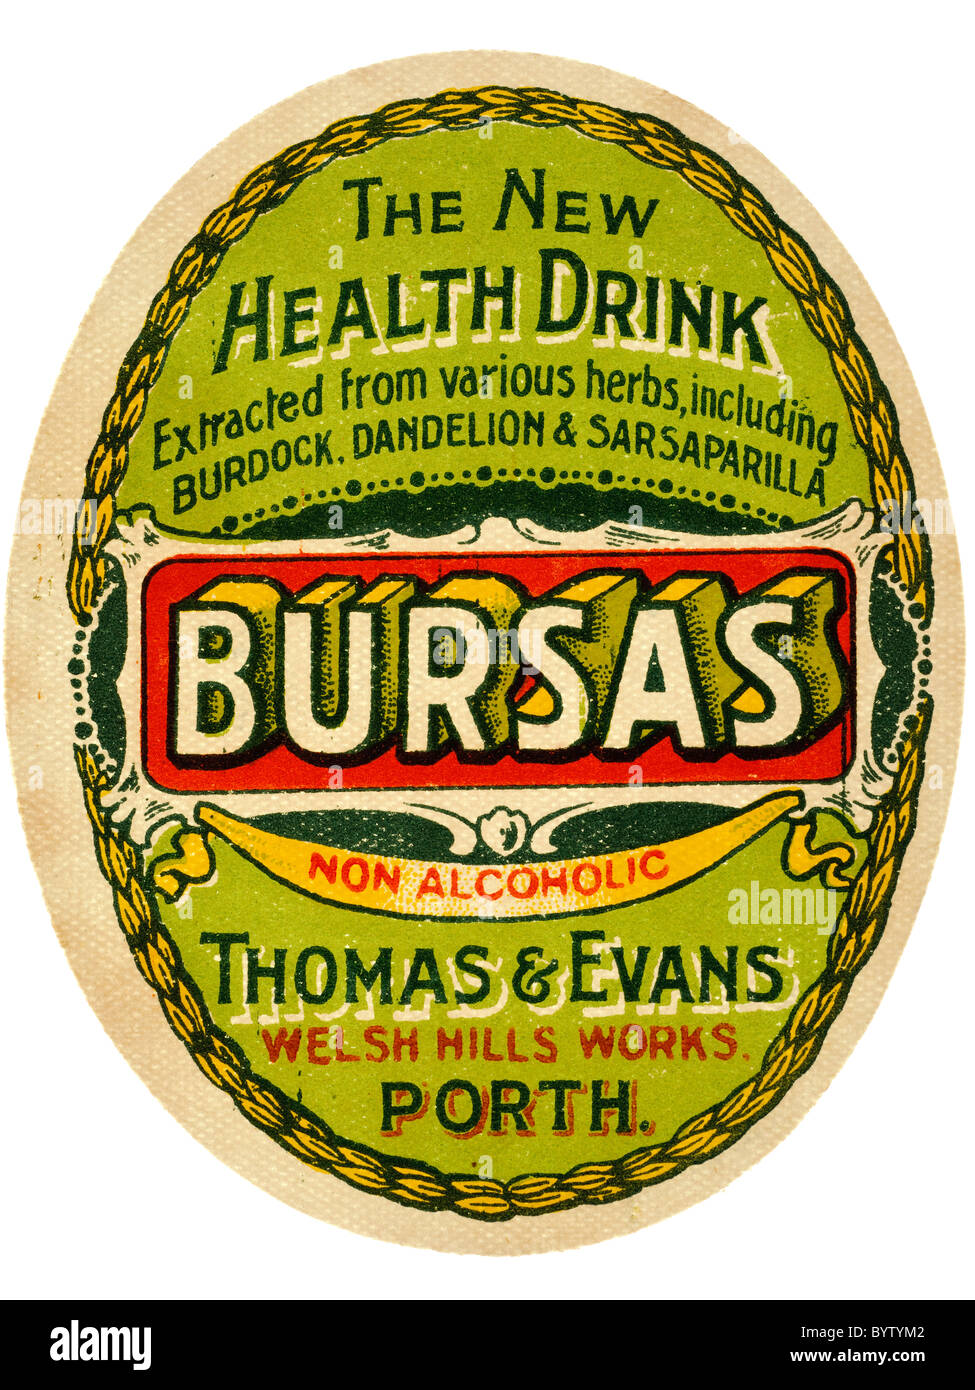 Pop de papel antigua etiqueta de bursas bebida sin alcohol de Thomas & Evans colinas galesas obras Porth. Sólo EDITORIAL Foto de stock